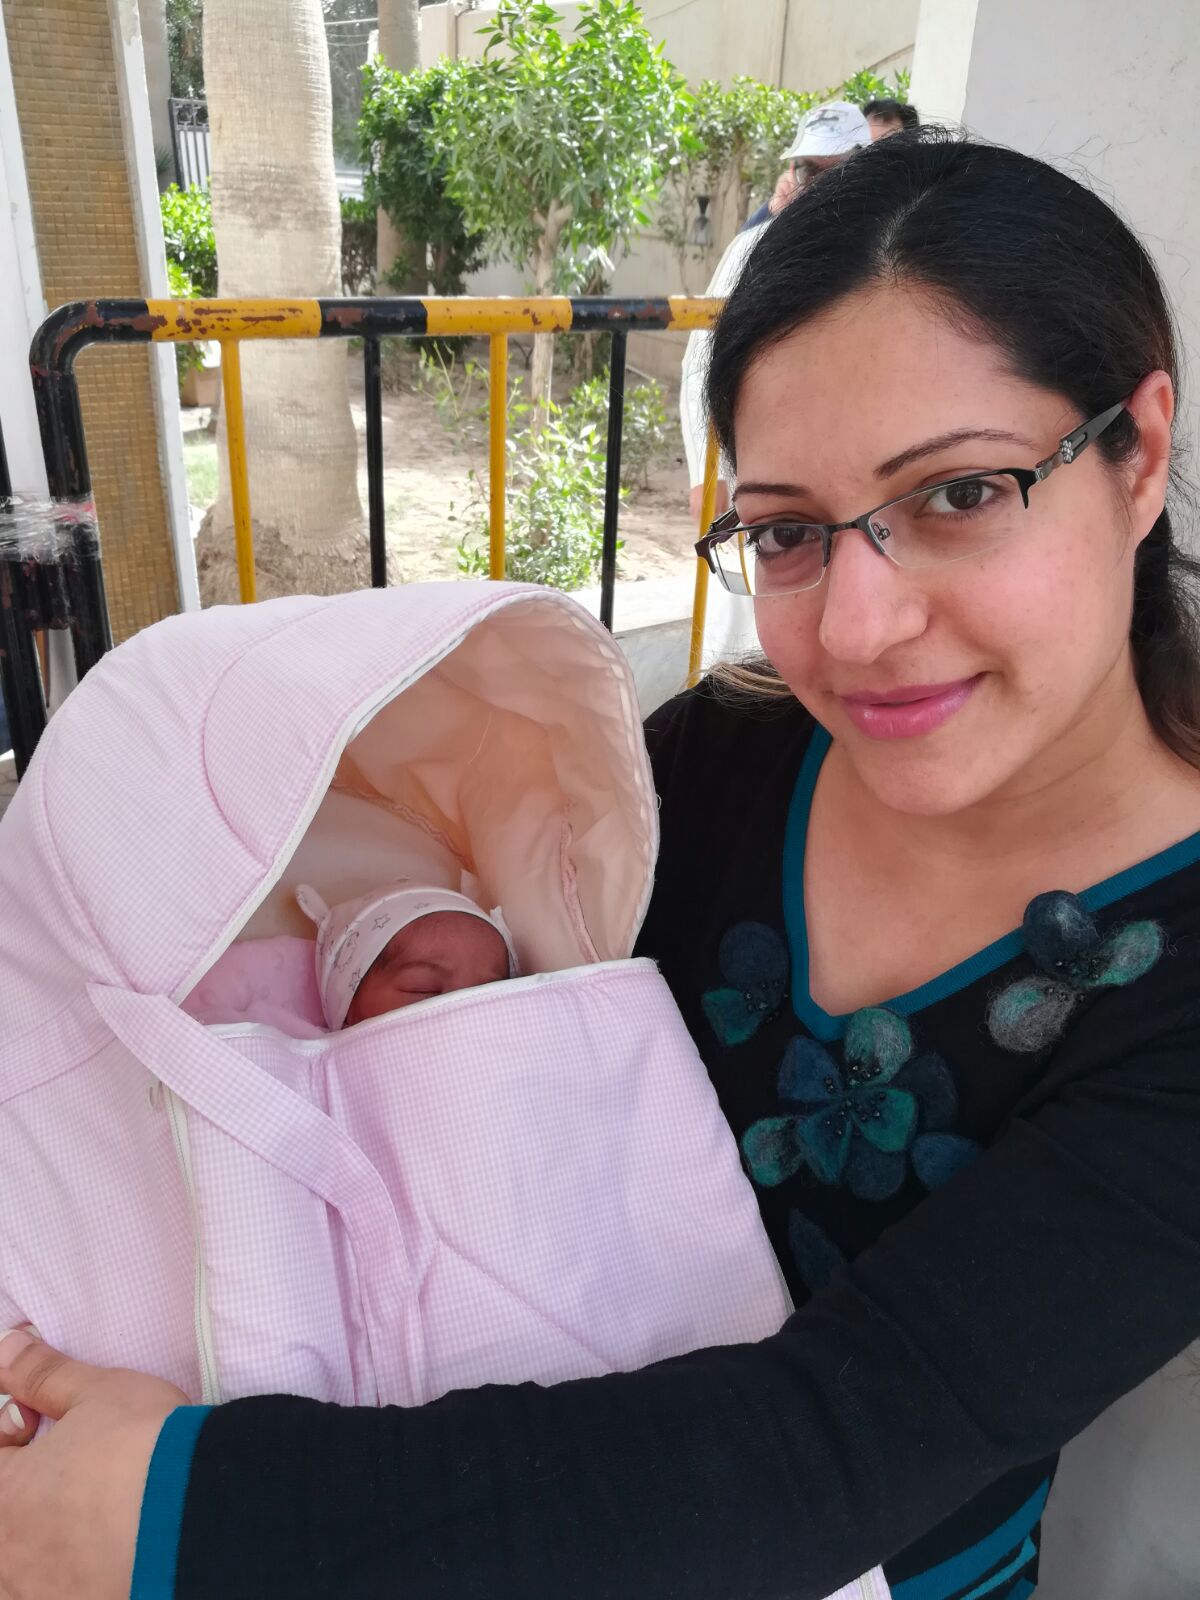 مصرية تخرج من المستشفى بعد الولادة للتصويت